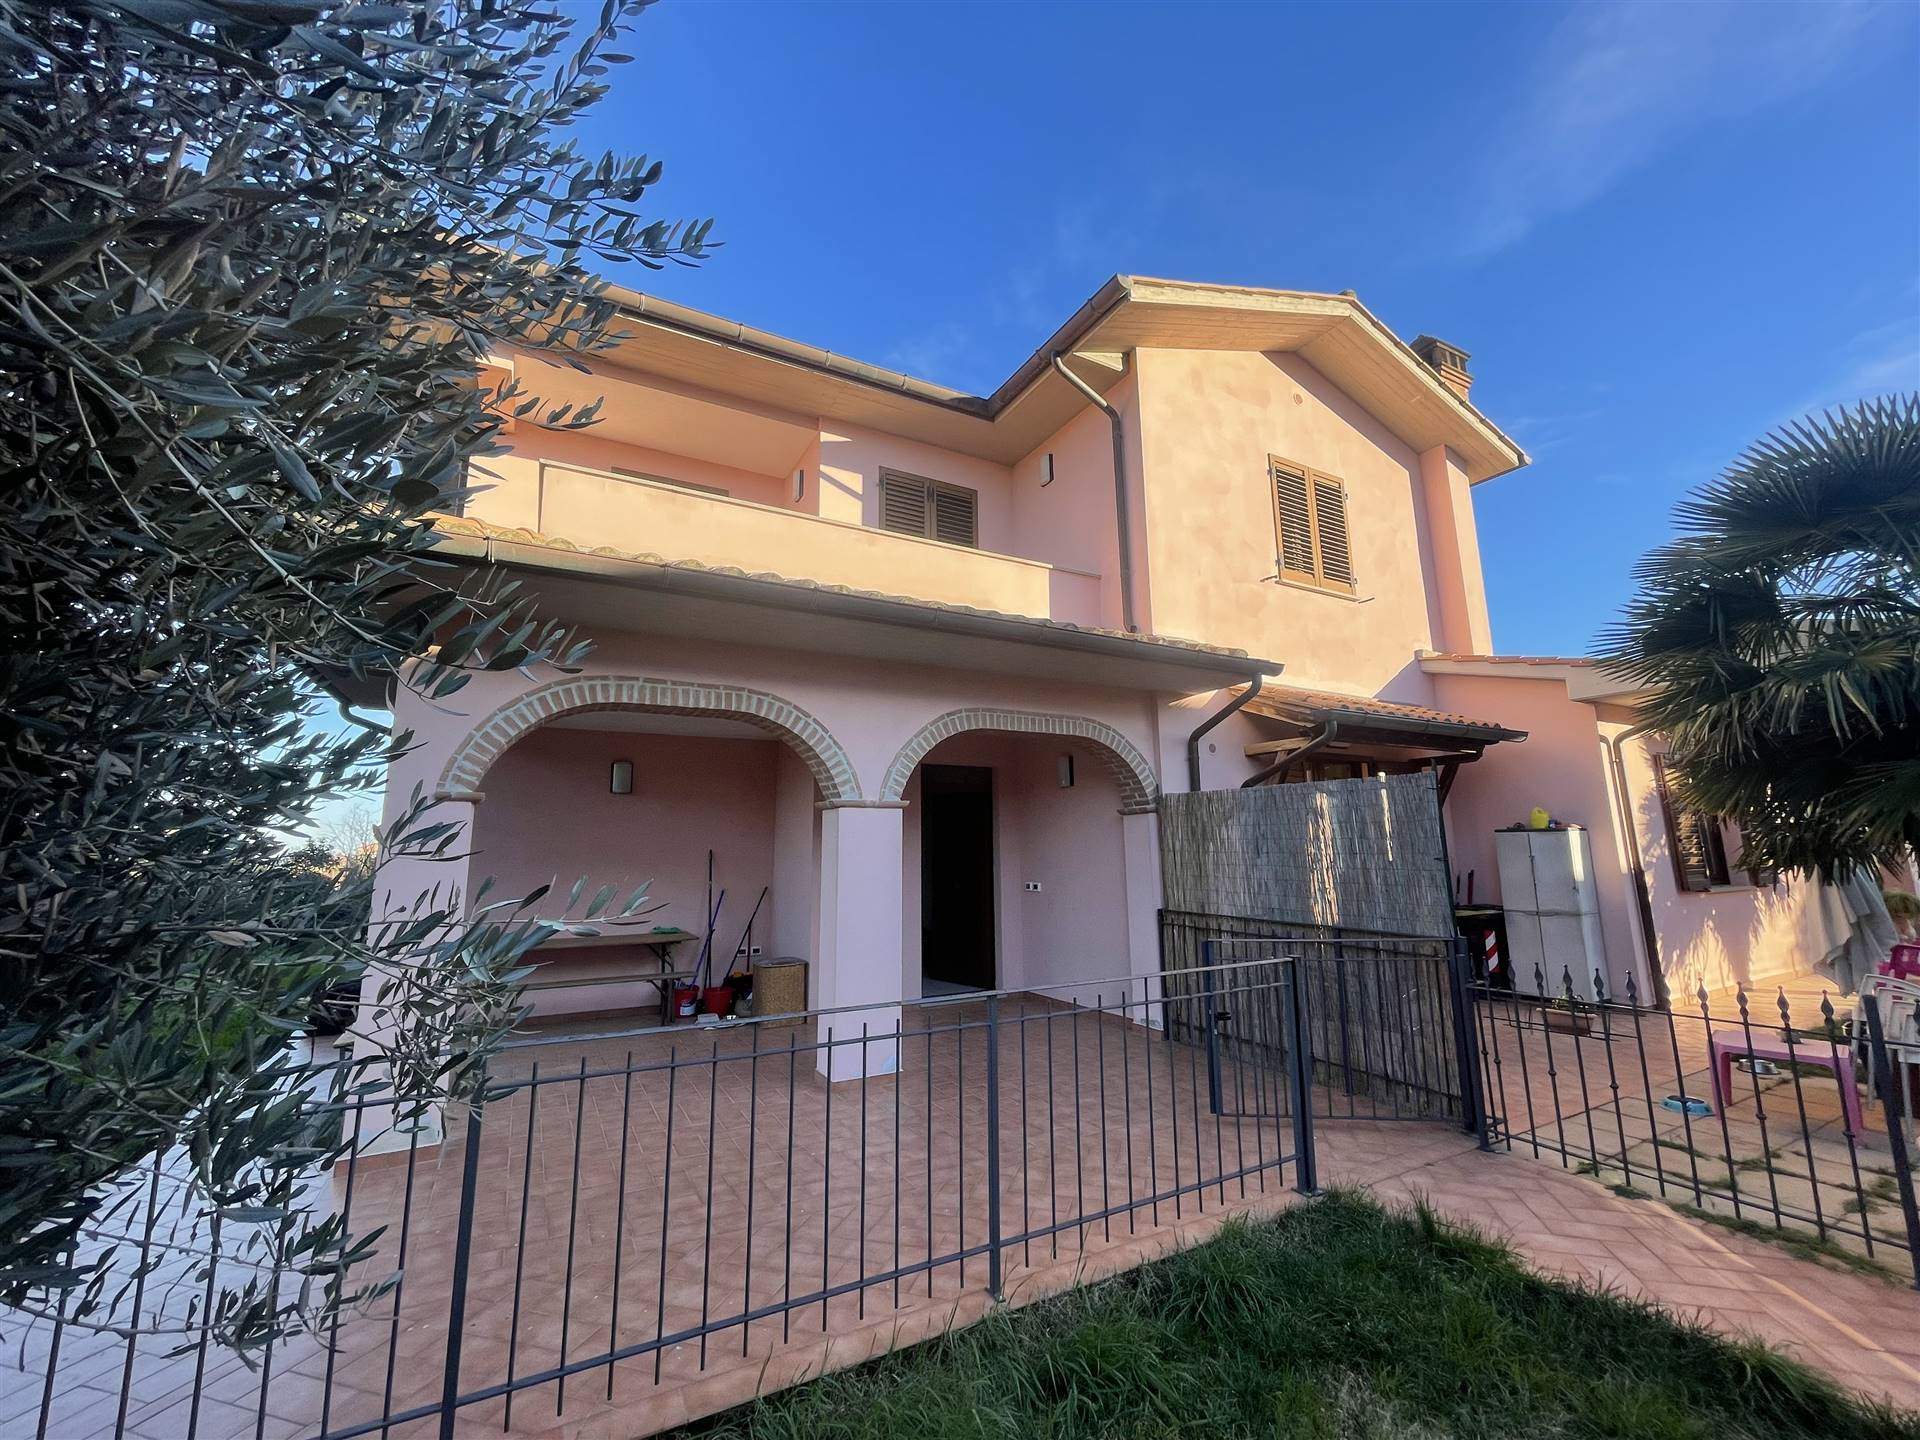 Villa in vendita a Castiglione del Lago, 5 locali, zona Zona: Pozzuolo, prezzo € 195.000 | CambioCasa.it